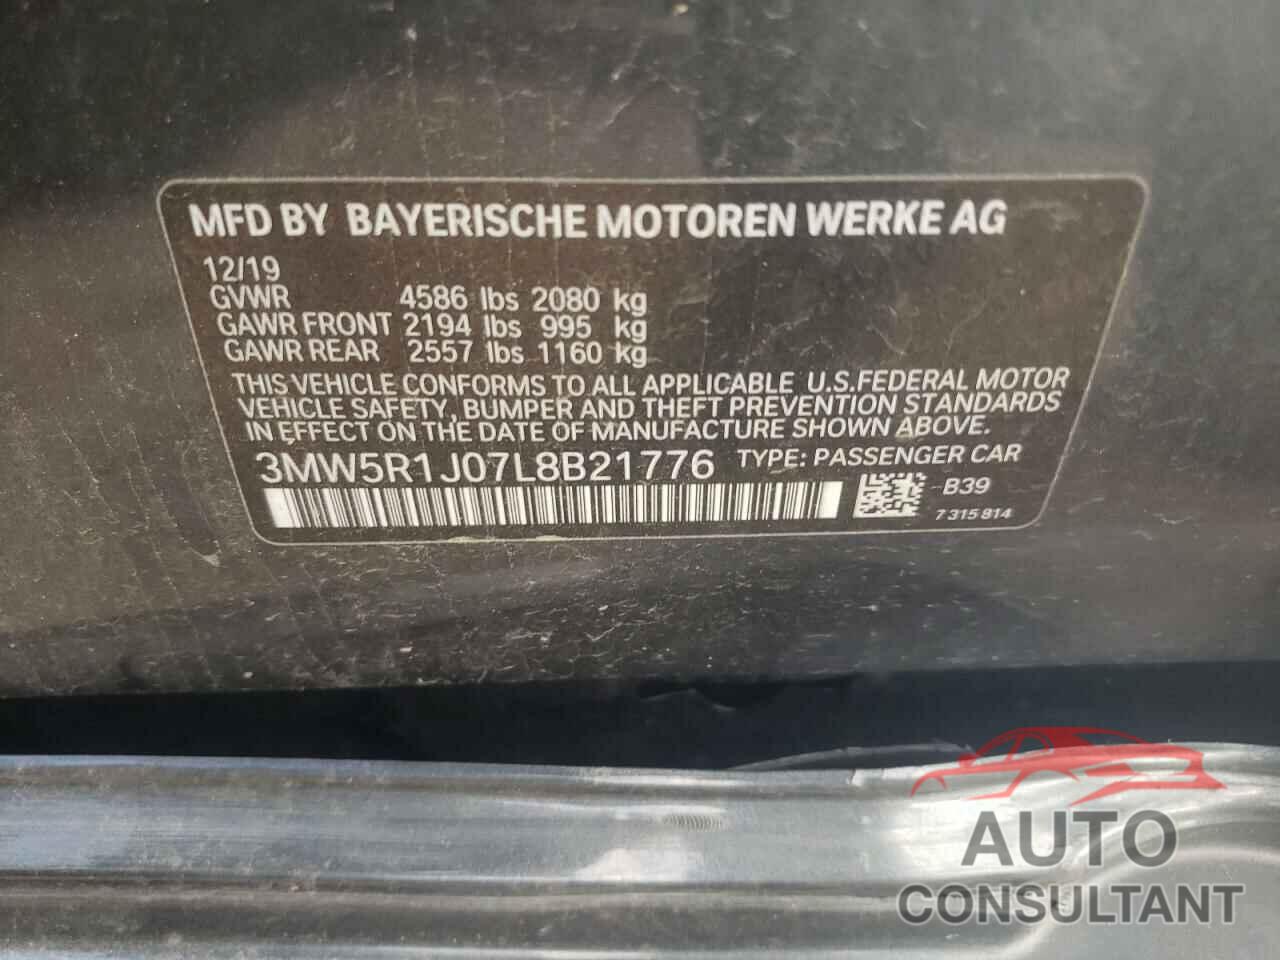 BMW 3 SERIES 2020 - 3MW5R1J07L8B21776